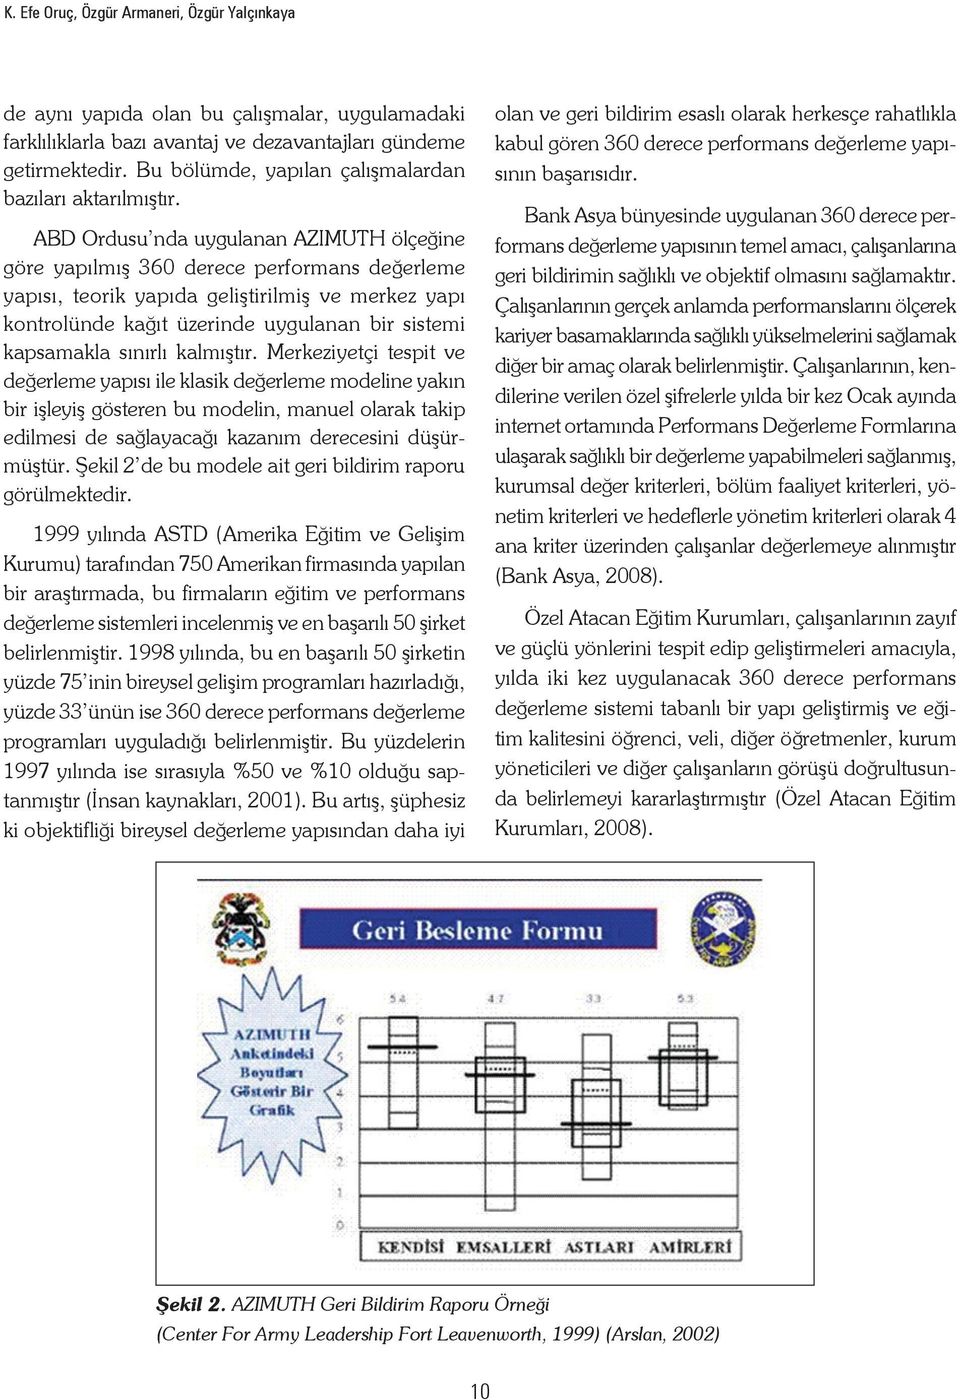 ABD Ordusu nda uygulanan AZIMUTH ölçeğine göre yapılmış 360 derece performans değerleme yapısı, teorik yapıda geliştirilmiş ve merkez yapı kontrolünde kağıt üzerinde uygulanan bir sistemi kapsamakla